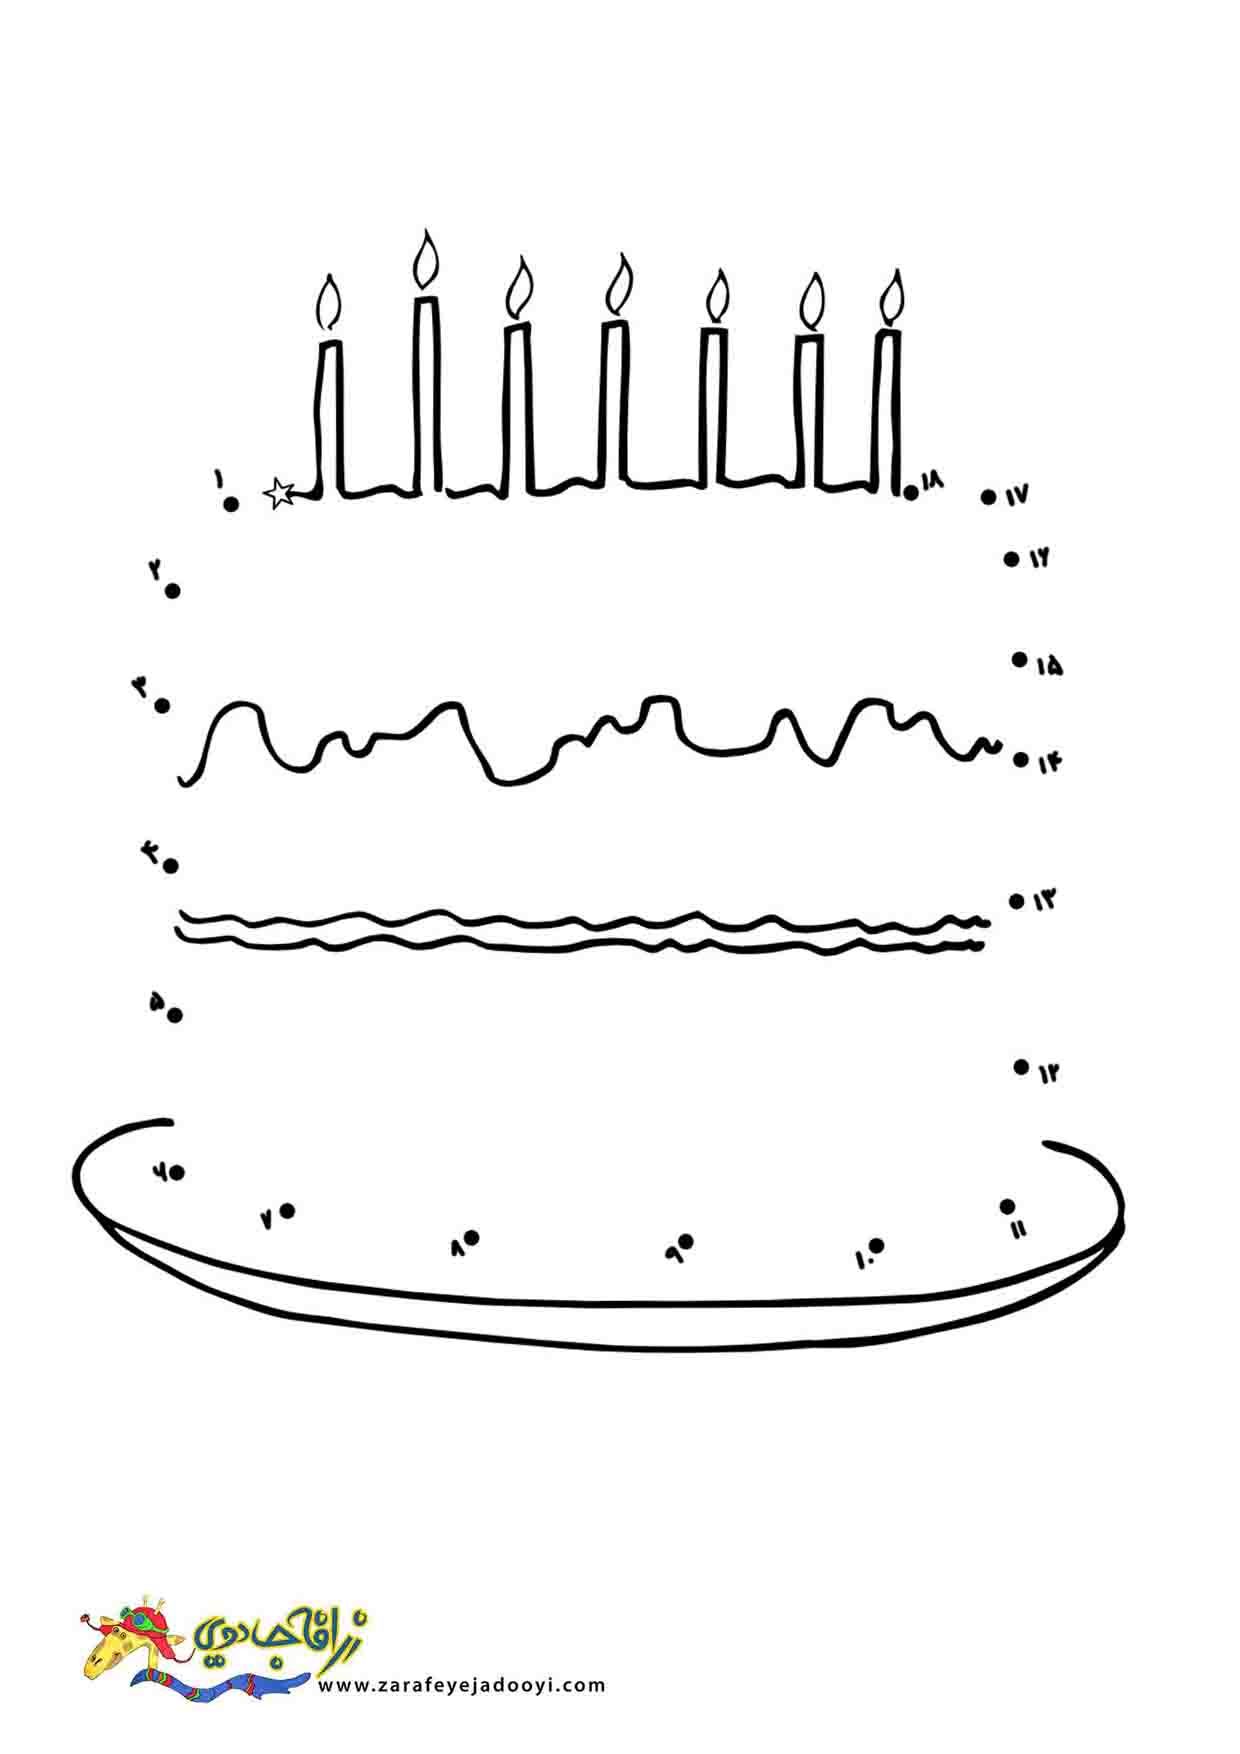 زرافه جادویی - نقاشی نقطه به نقطه کیک تولد